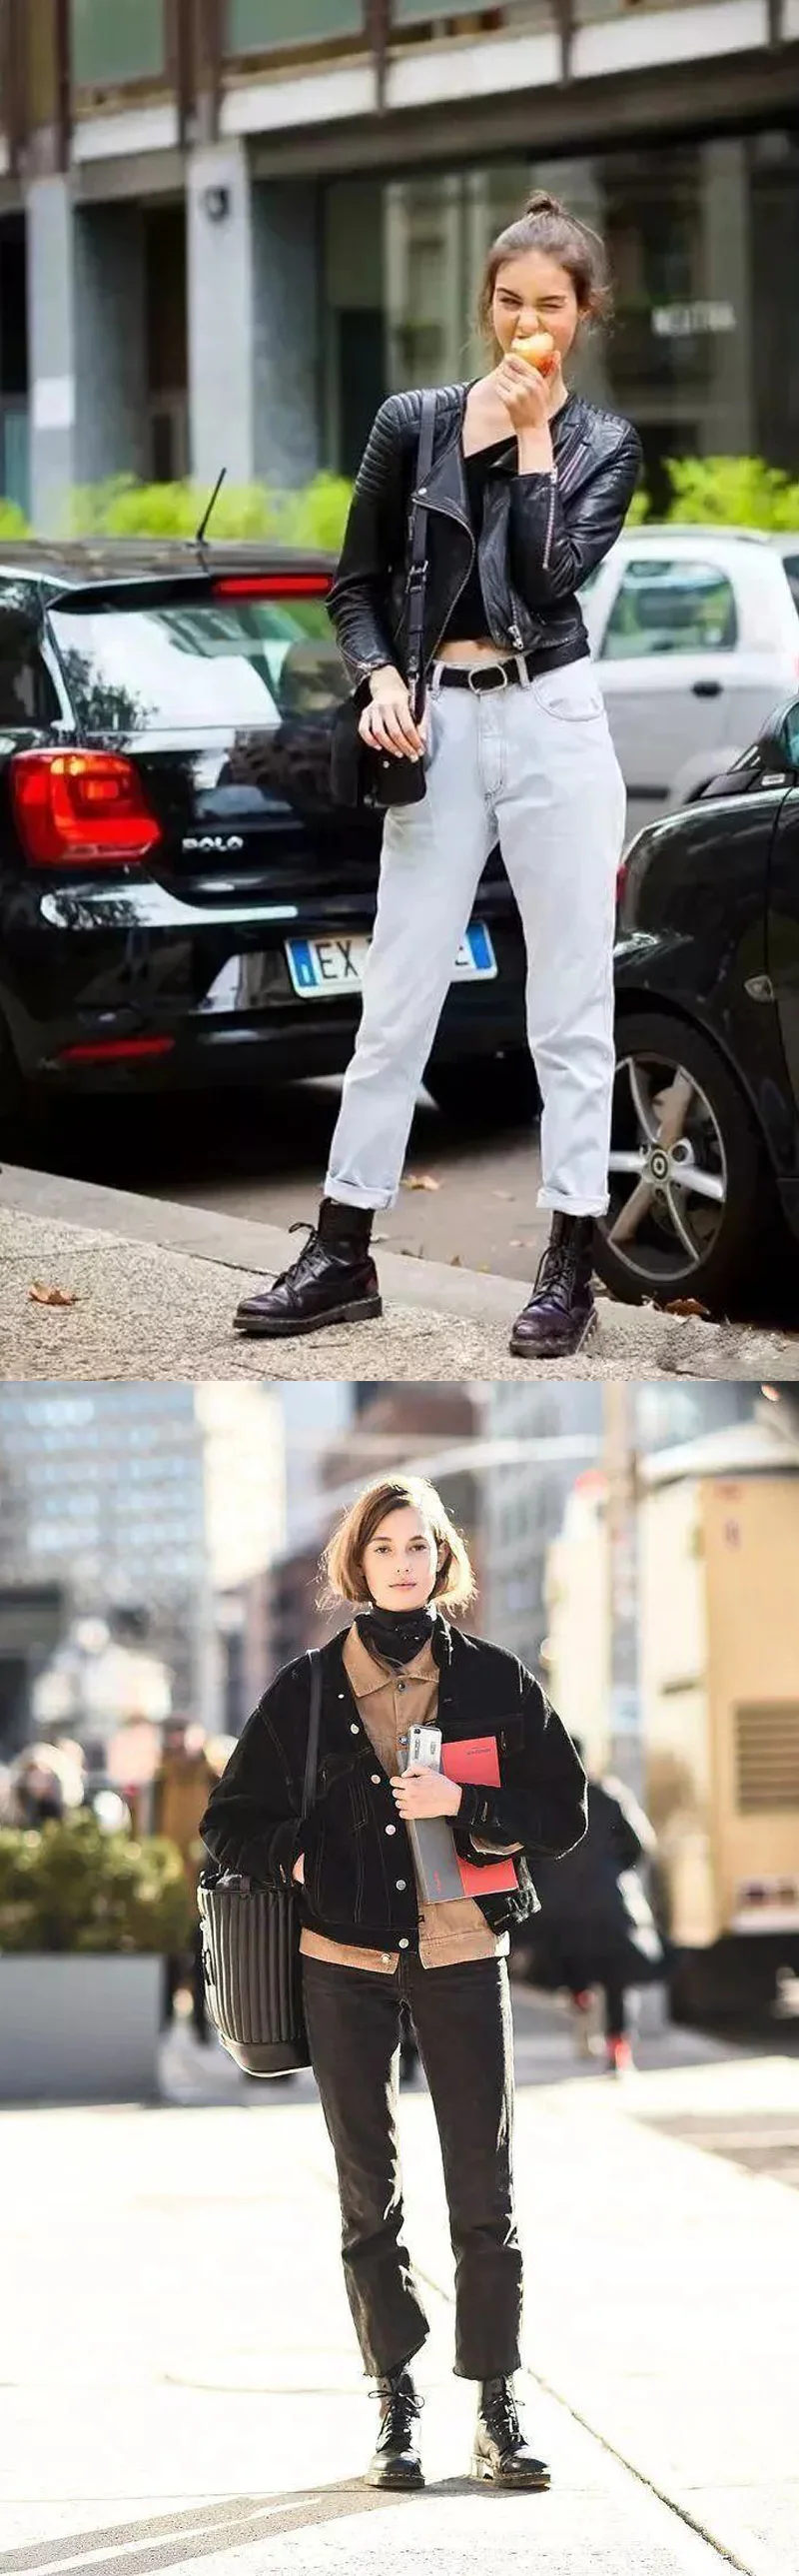 CXJYWMJL/мотоботы; женские ботильоны; кожаные ботинки; женские осенние ботинки; женские ботинки; зимние ботинки; ботинки на резиновой подошве; 6857